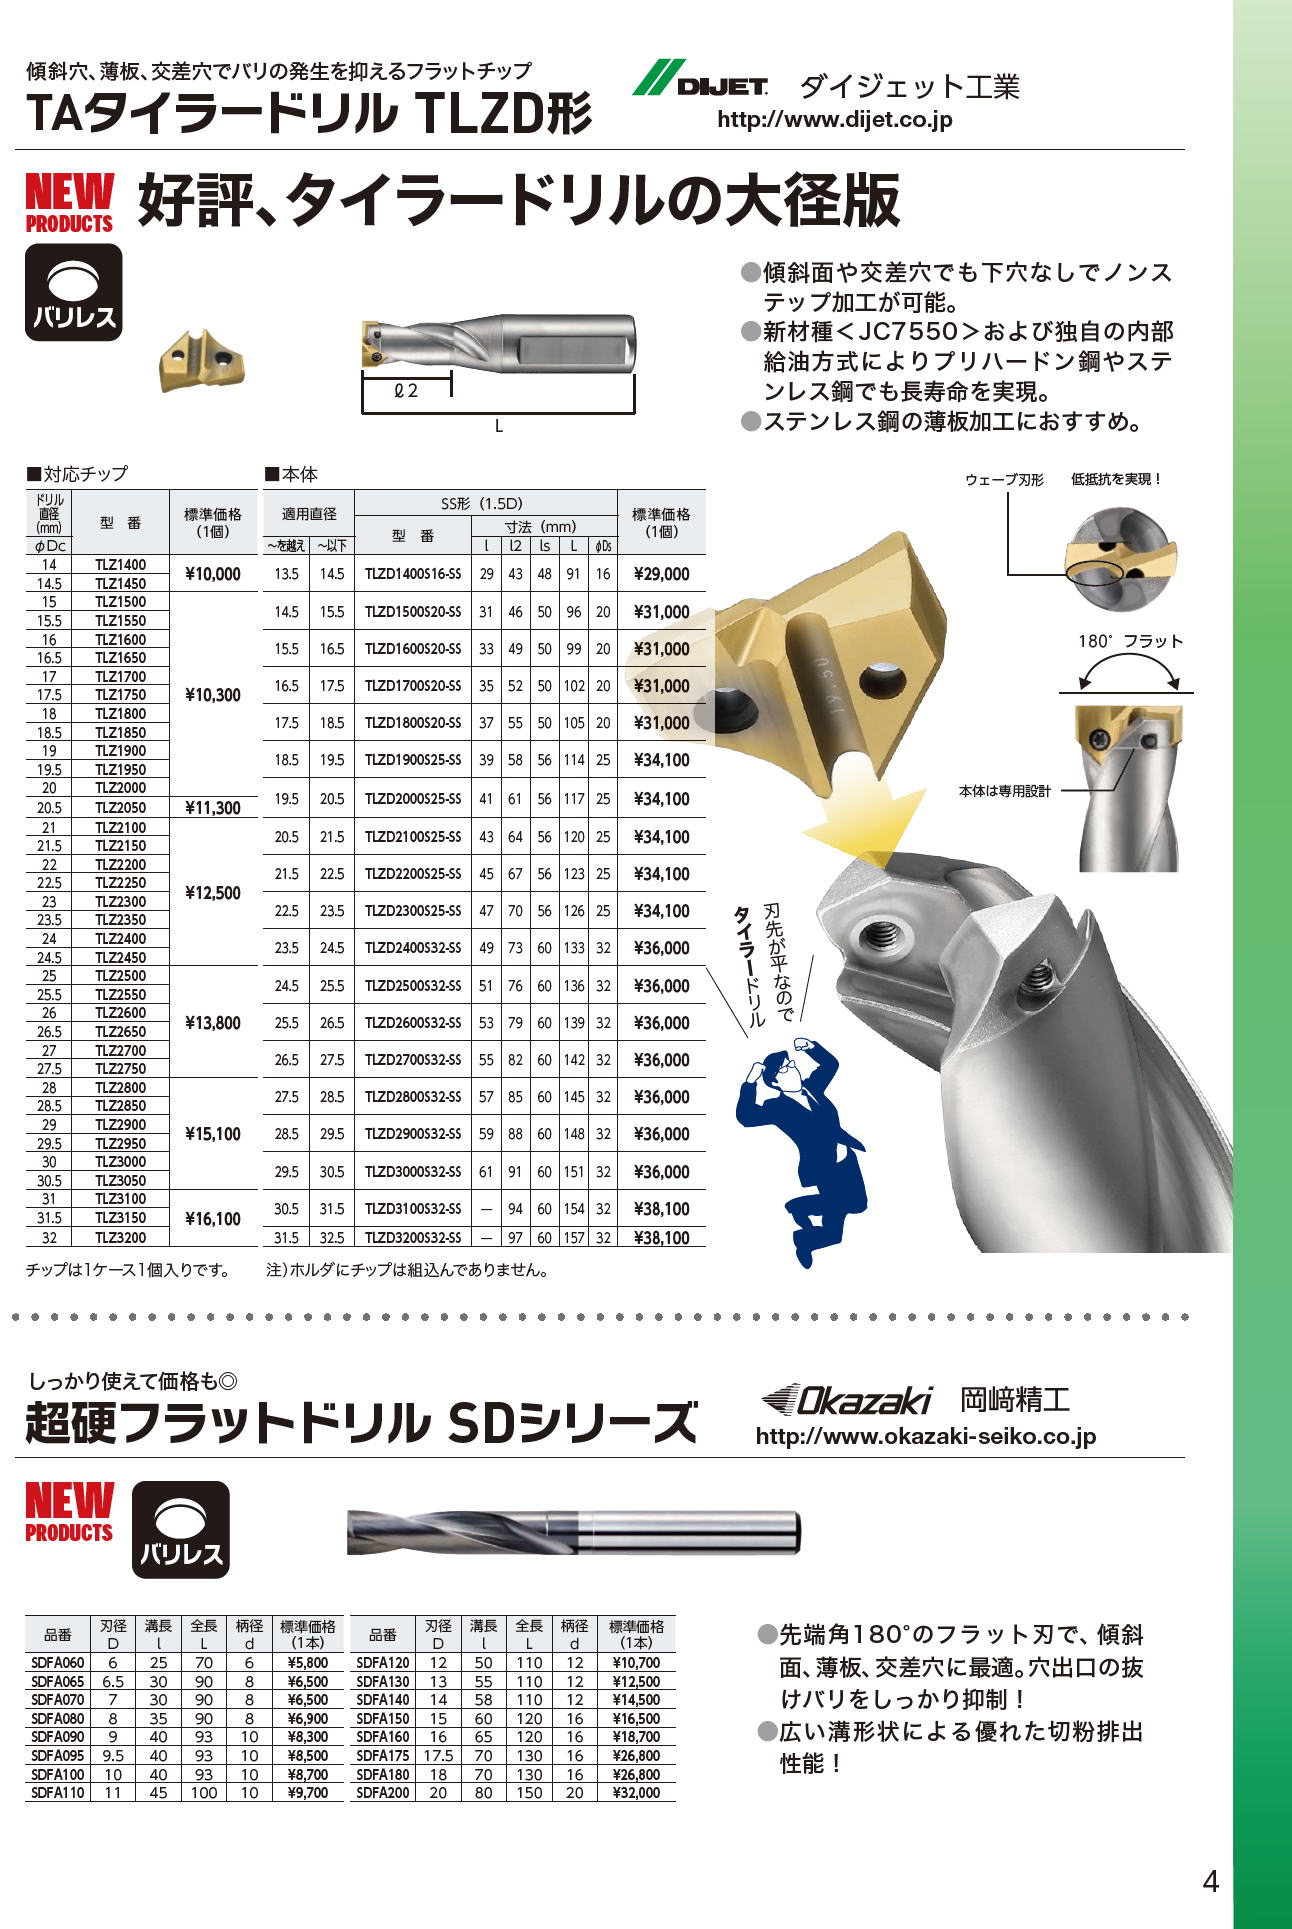 ダイジェット工業 DIJET TAタイラードリル TLZD形 / 岡崎精工 超硬フラットドリル SDシリーズ